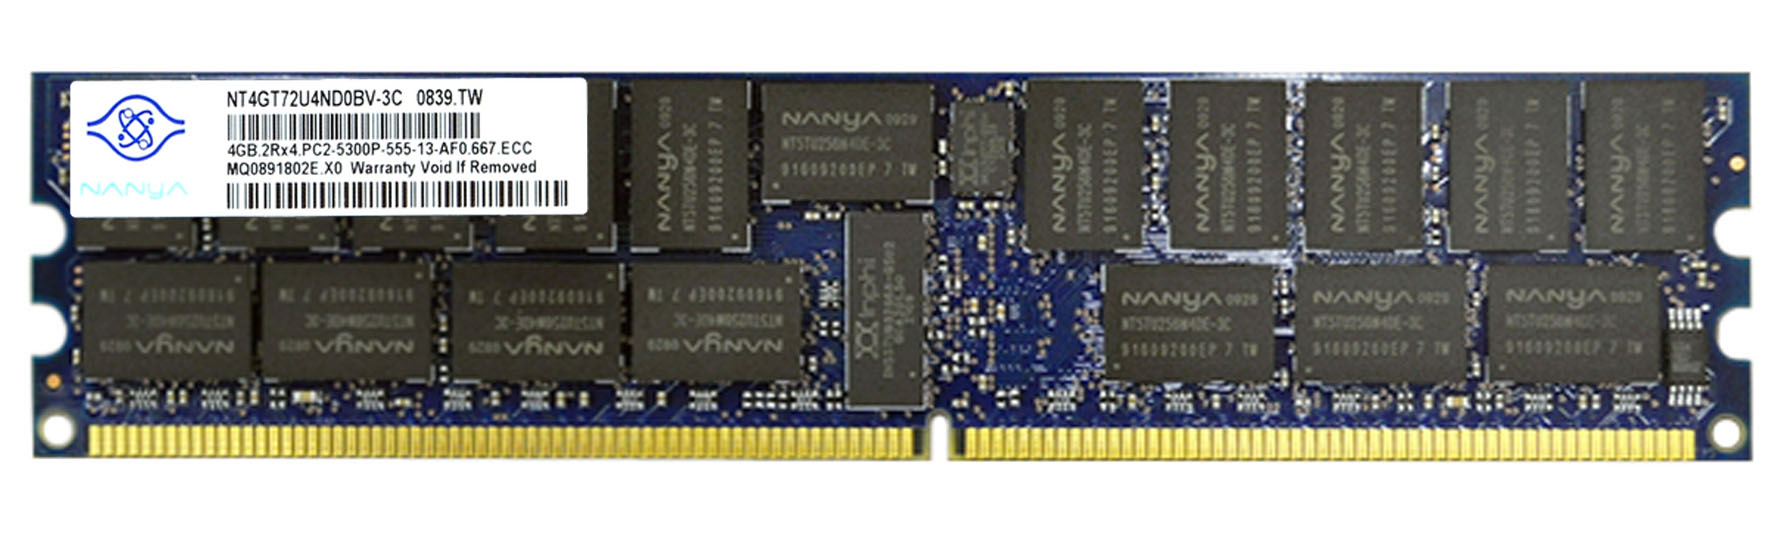 NT4GT72U4ND0BV-3C | Nanya 4GB 2RX4 PC2-5300P Memory Module (1X4GB)